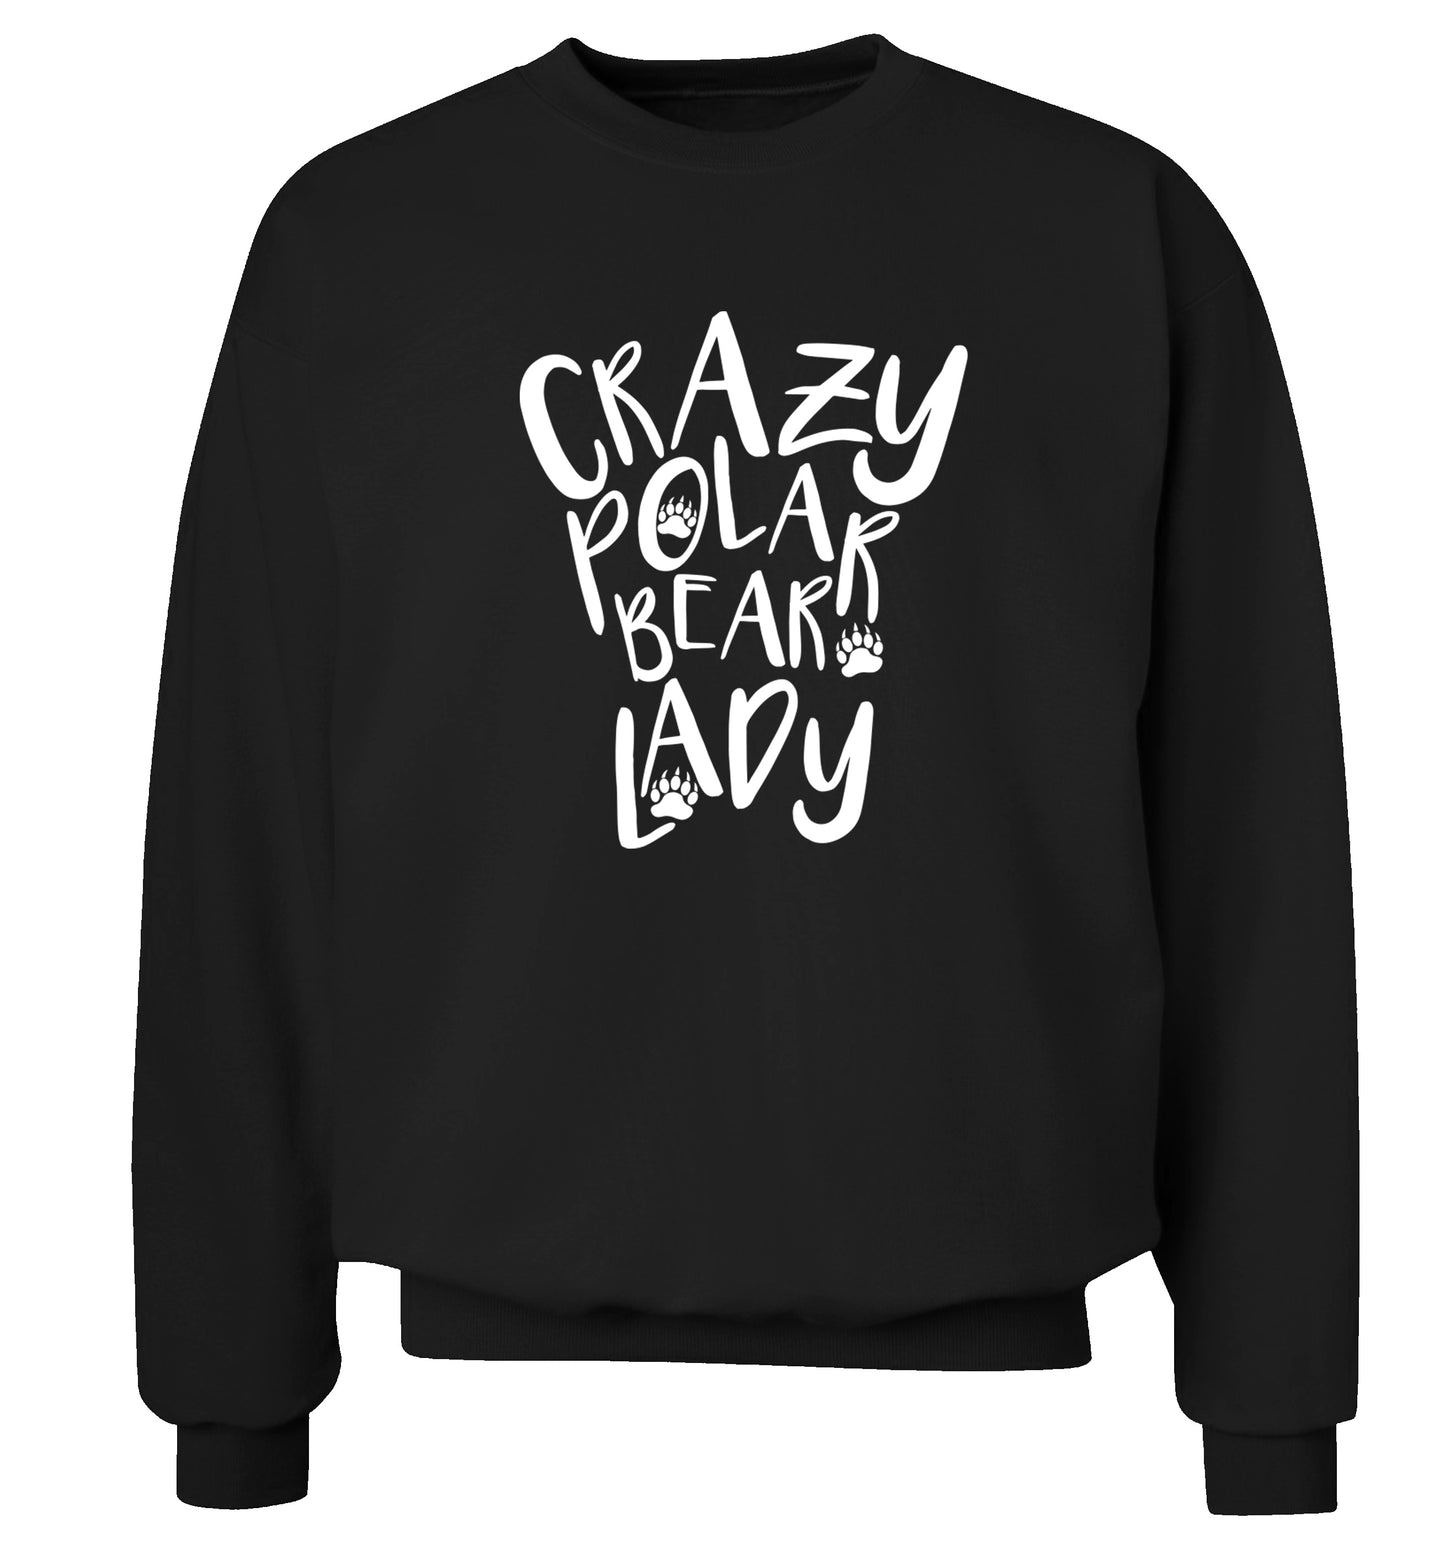 Crazy polar bear lady Adult's unisex black Sweater 2XL